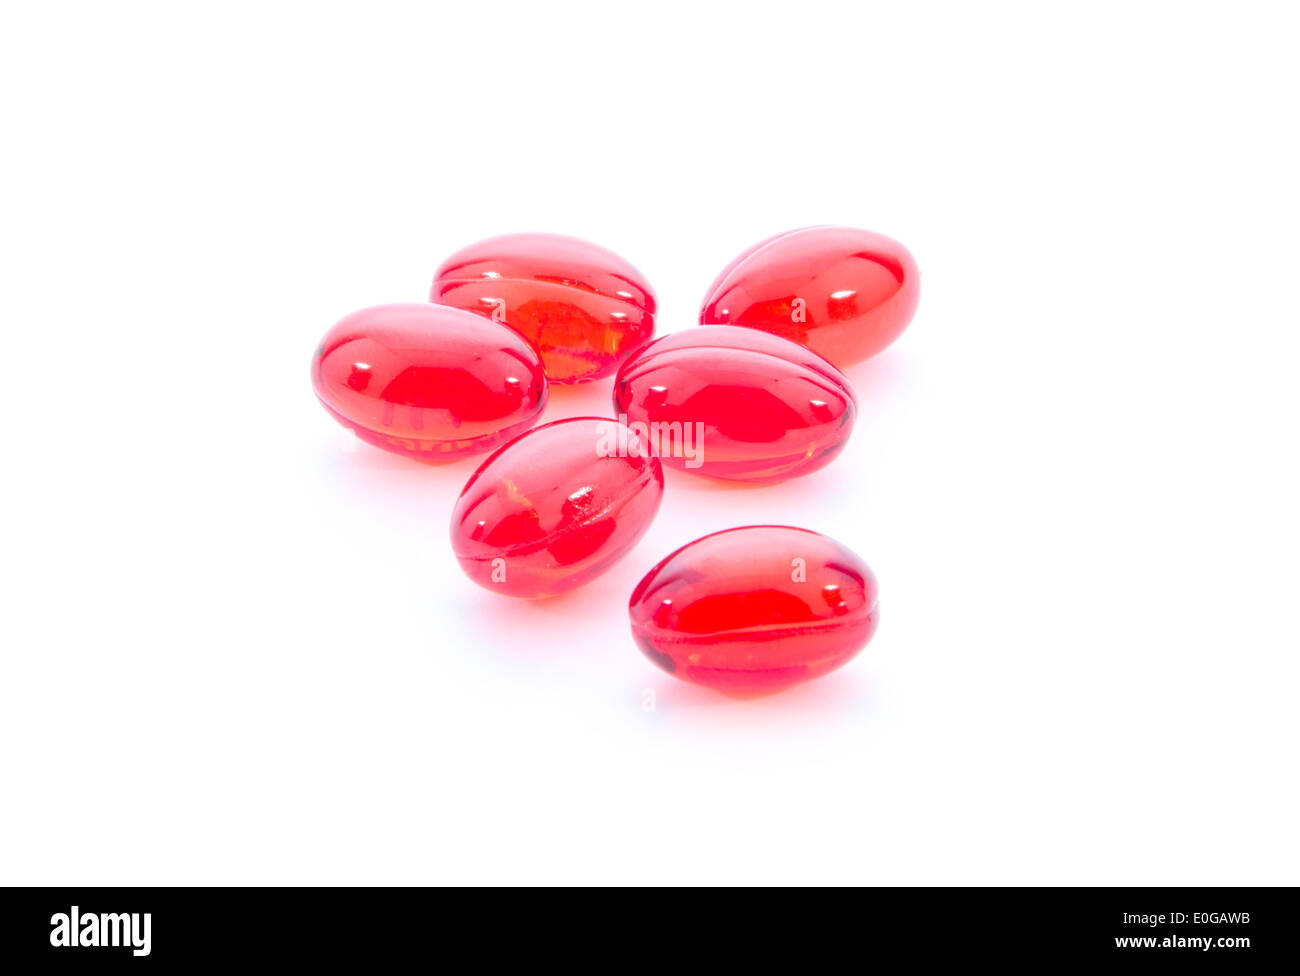 Gruppo di pillole rosso isolato su sfondo bianco Foto Stock